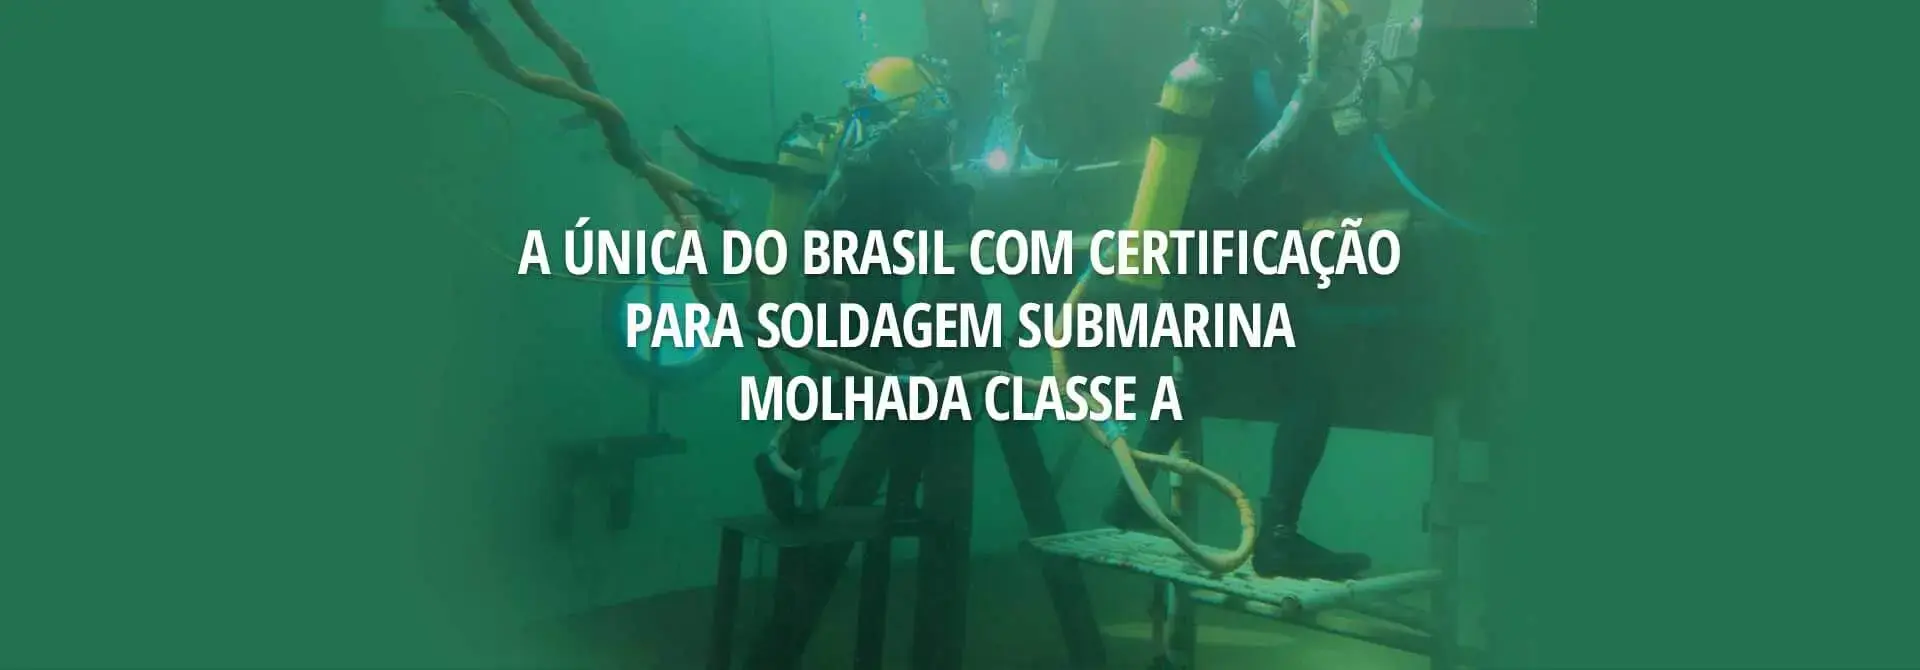 A única do Brasil com certificação para soldagem submarina molhada classe A